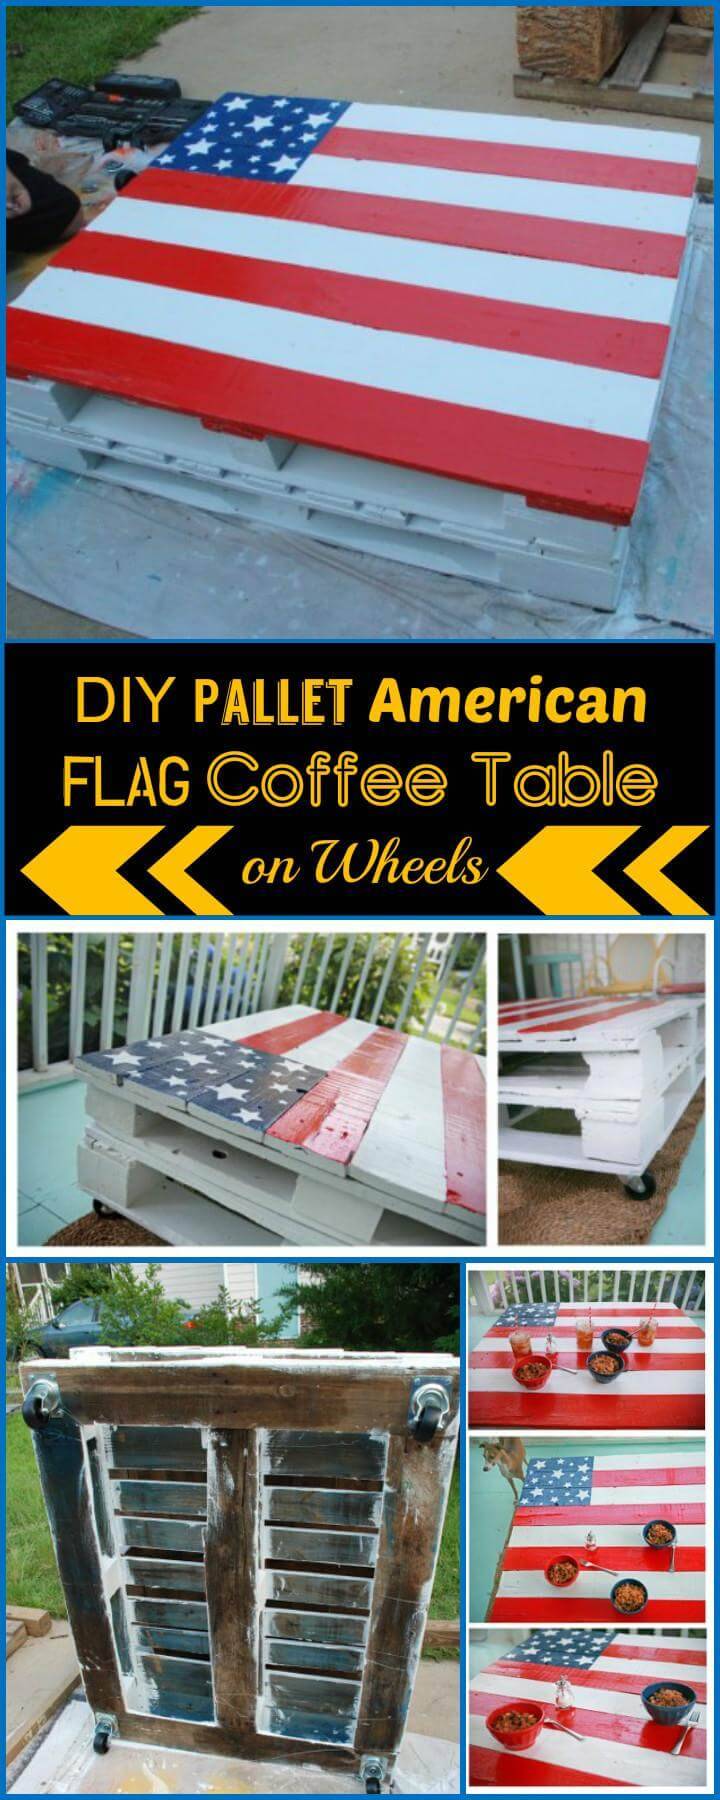 DIY pallet American flag coffee table on wheels